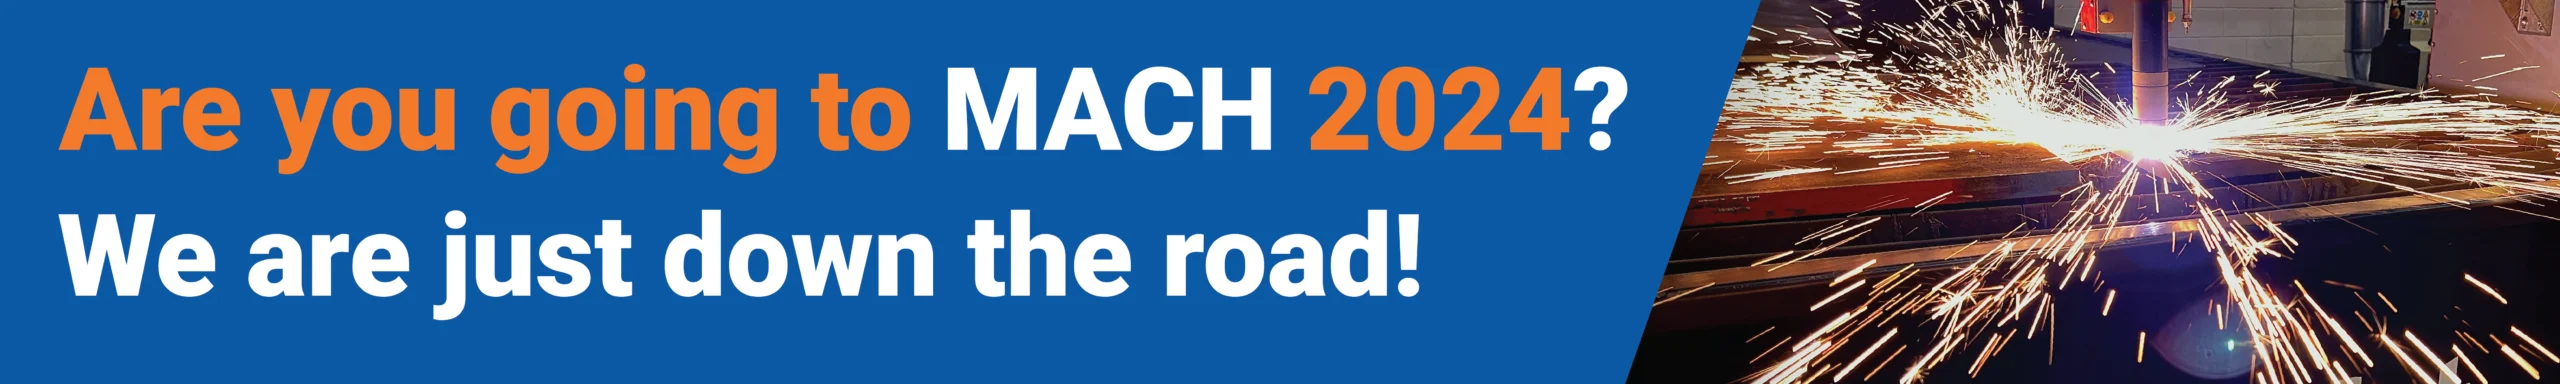 Du besöker MACH 2024 banner